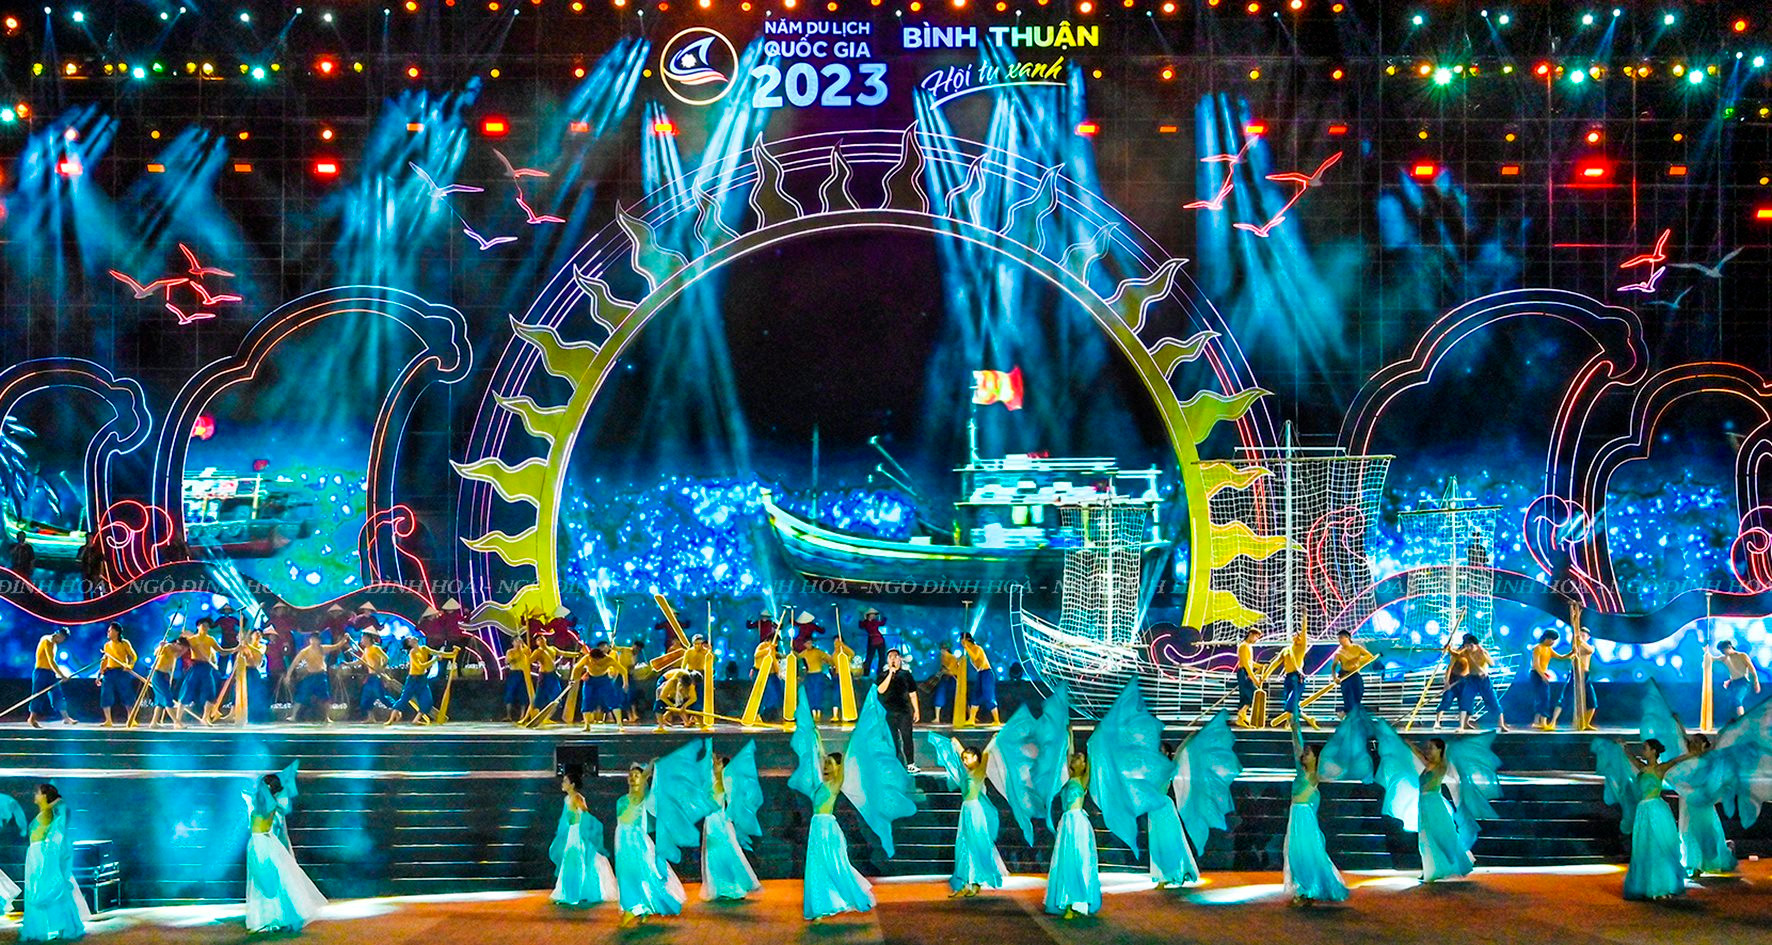 Lễ khai mạc Năm Du lịch quốc gia 2023 - "Bình Thuận - Hội tụ xanh": Hoành tráng, đặc sắc, ấn tượng...